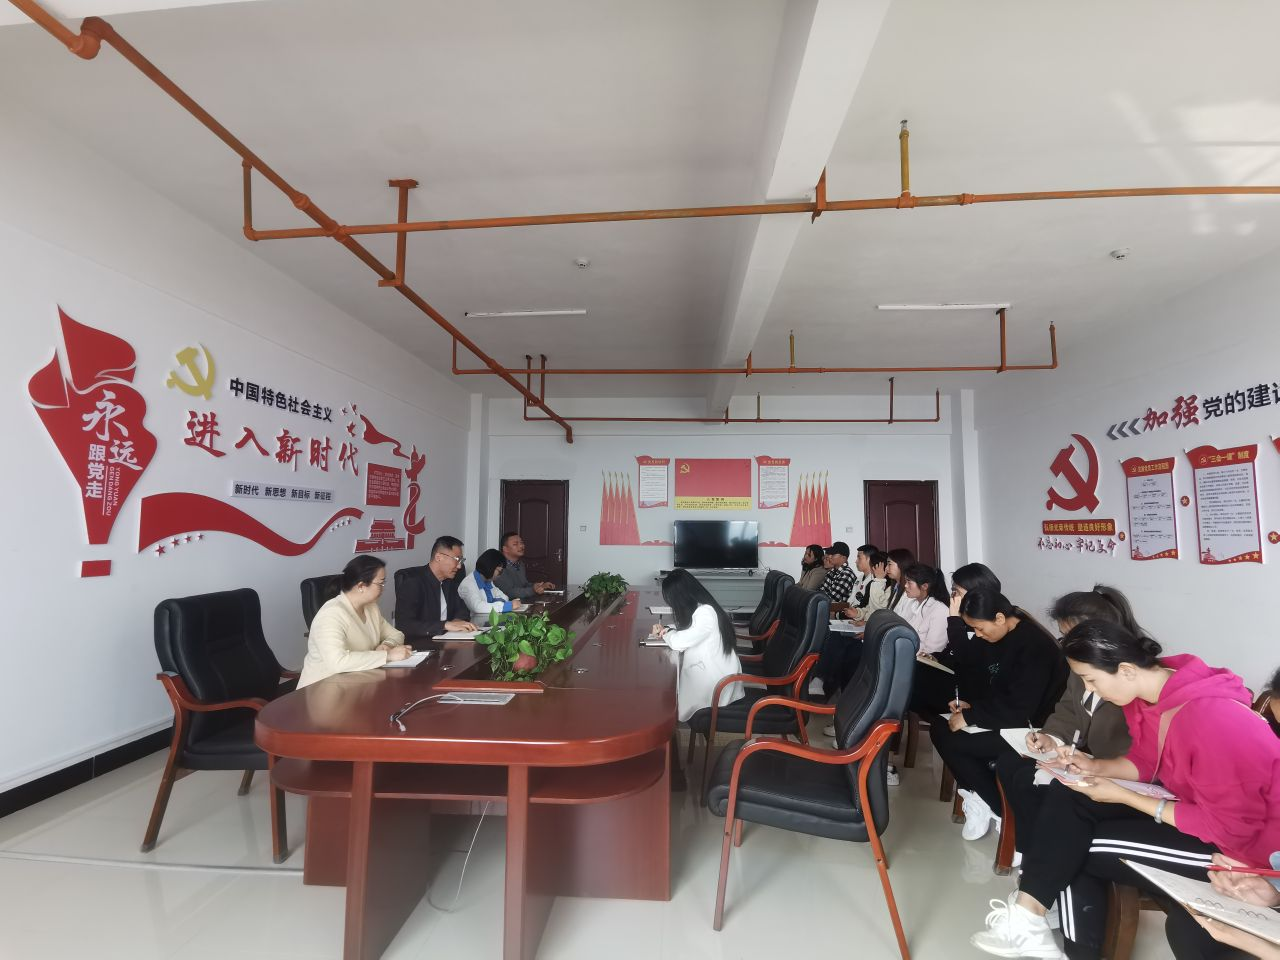 人事处组织召开 关于张力莹同志任命的会议